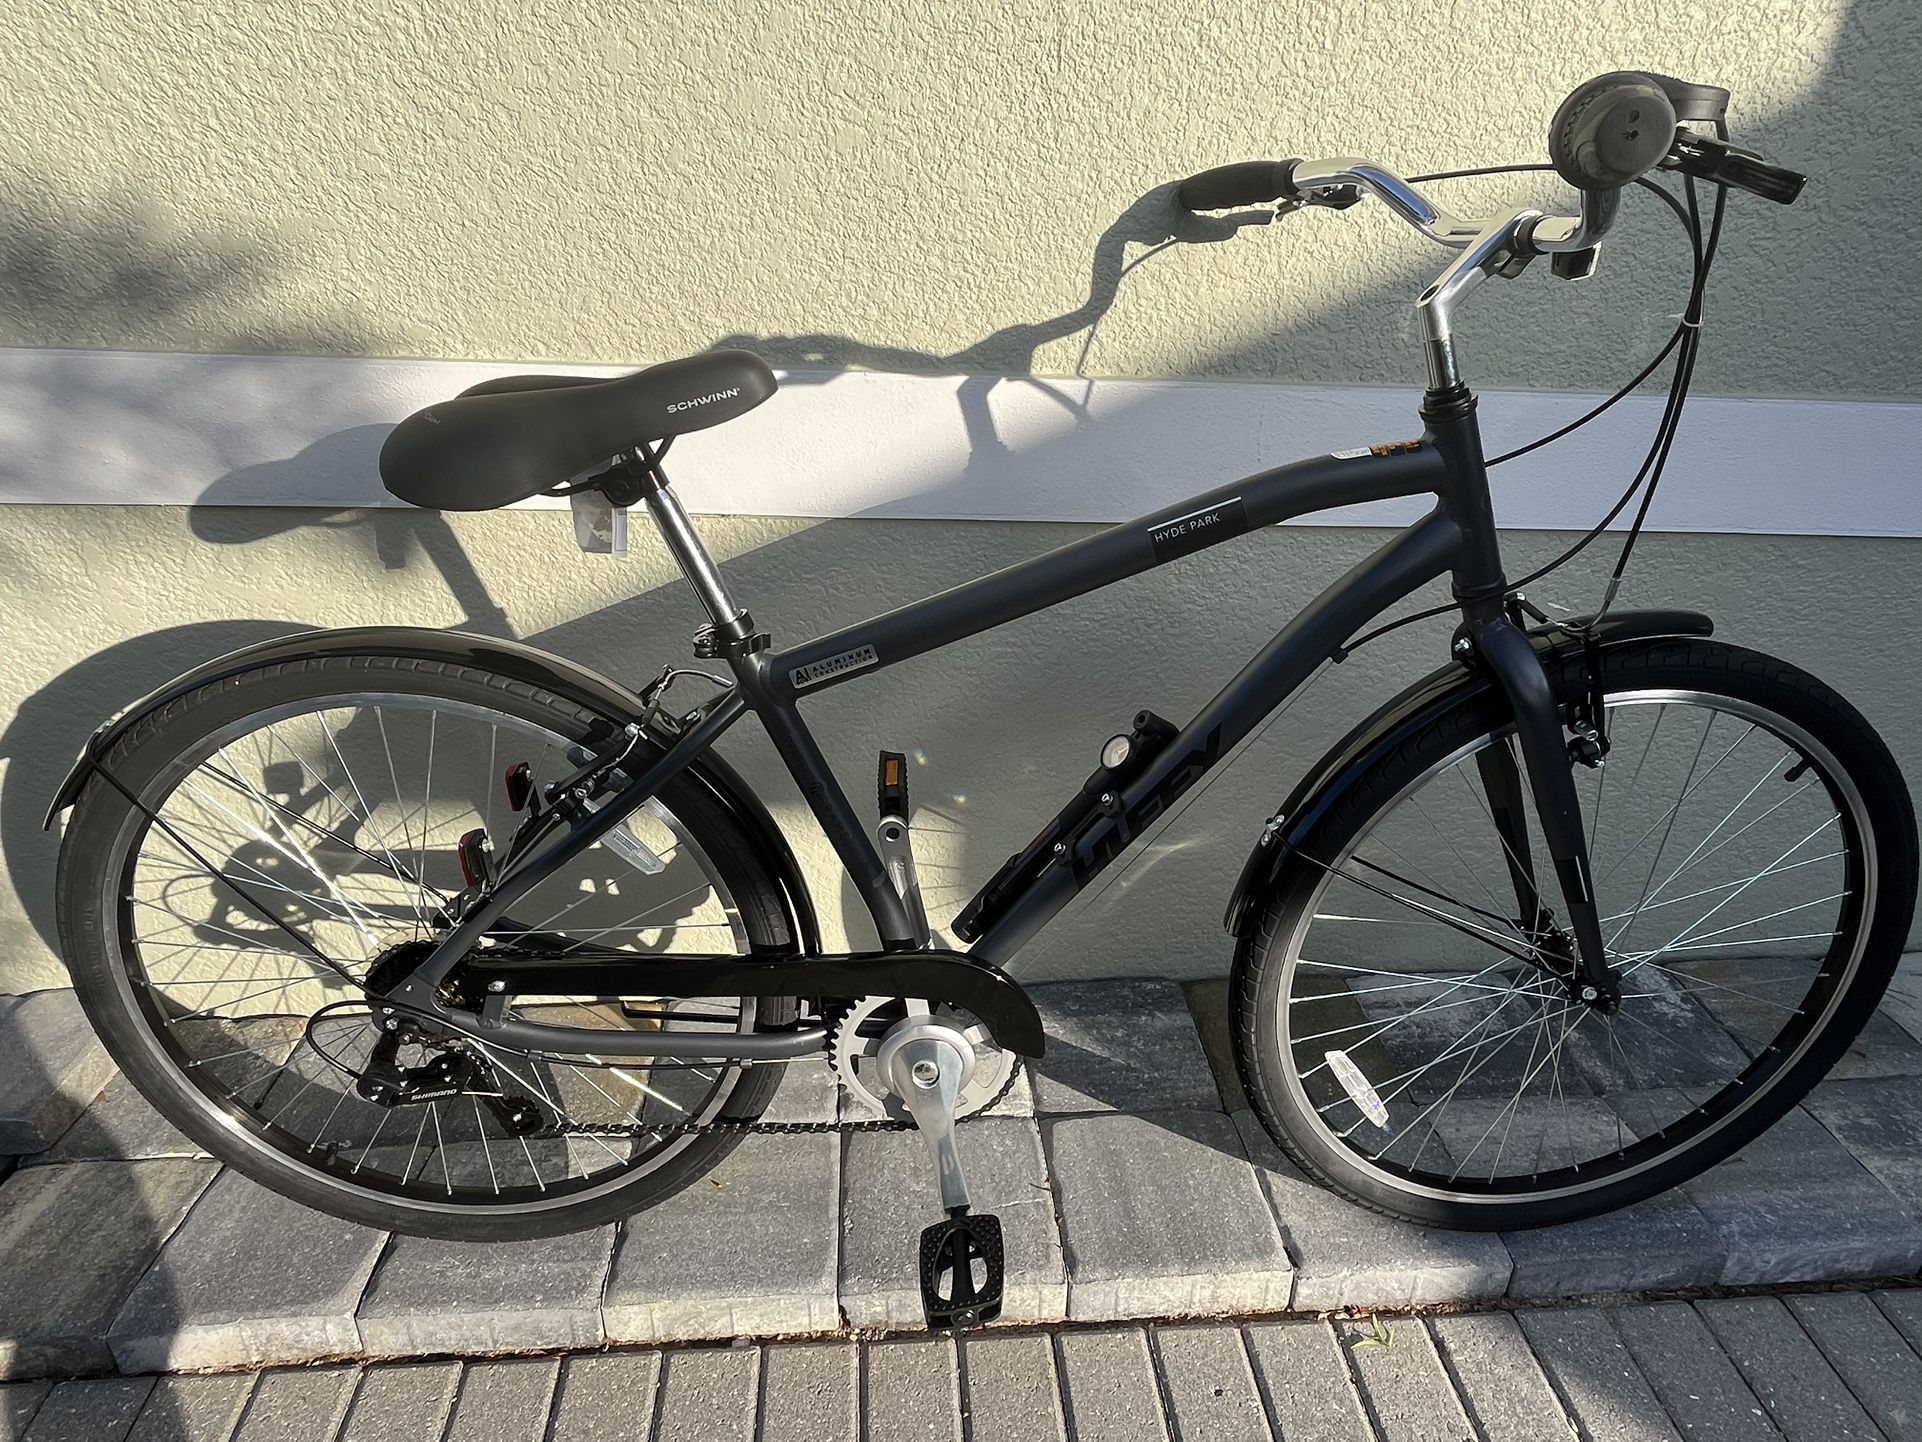 HUFFY HYDE PARK ALUMINUM Bike (Brand New)